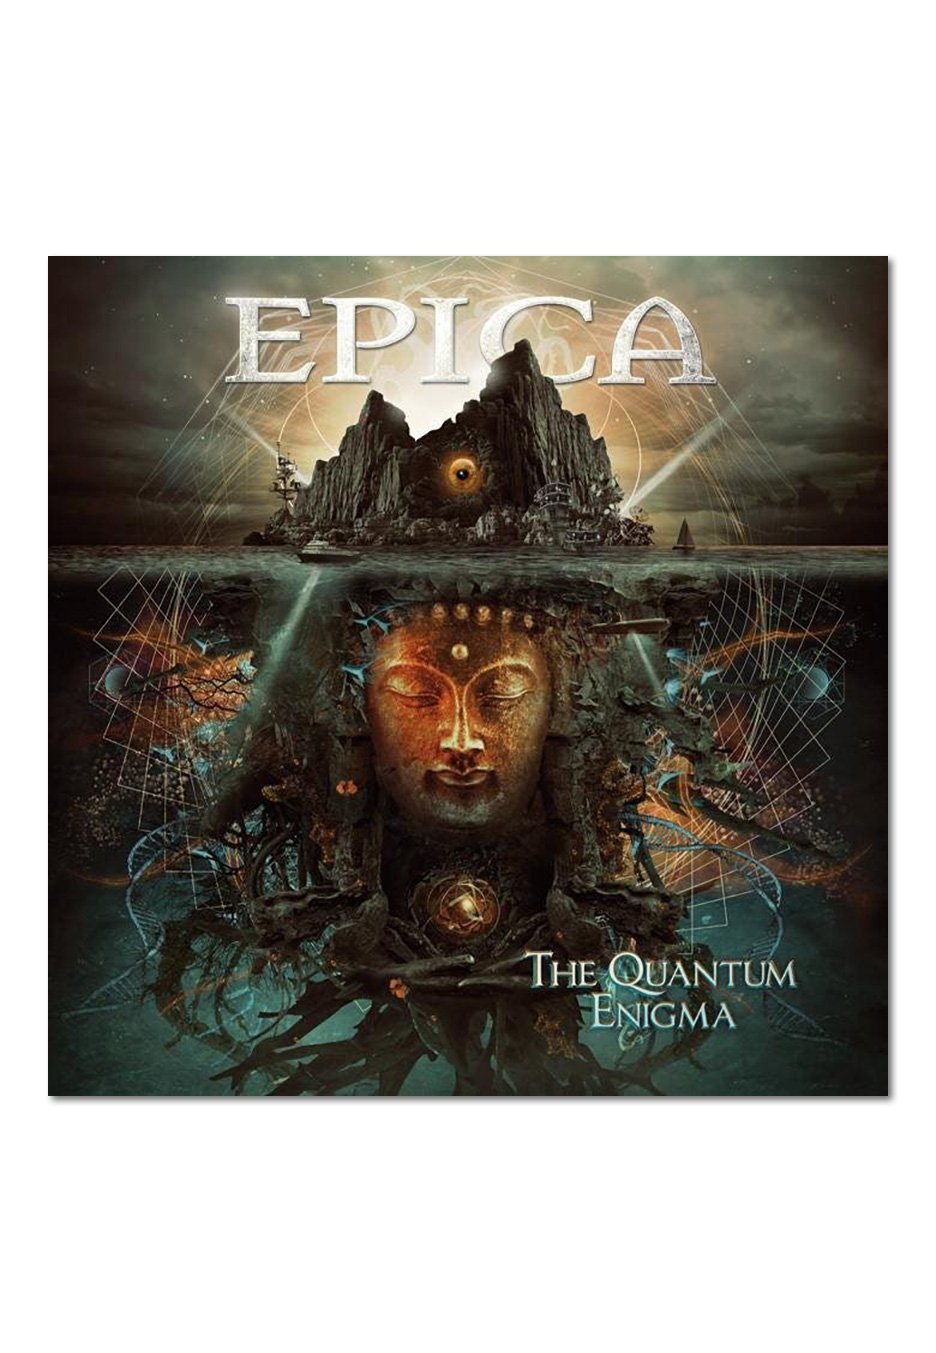 Epica - The Quantum Enigma - CD